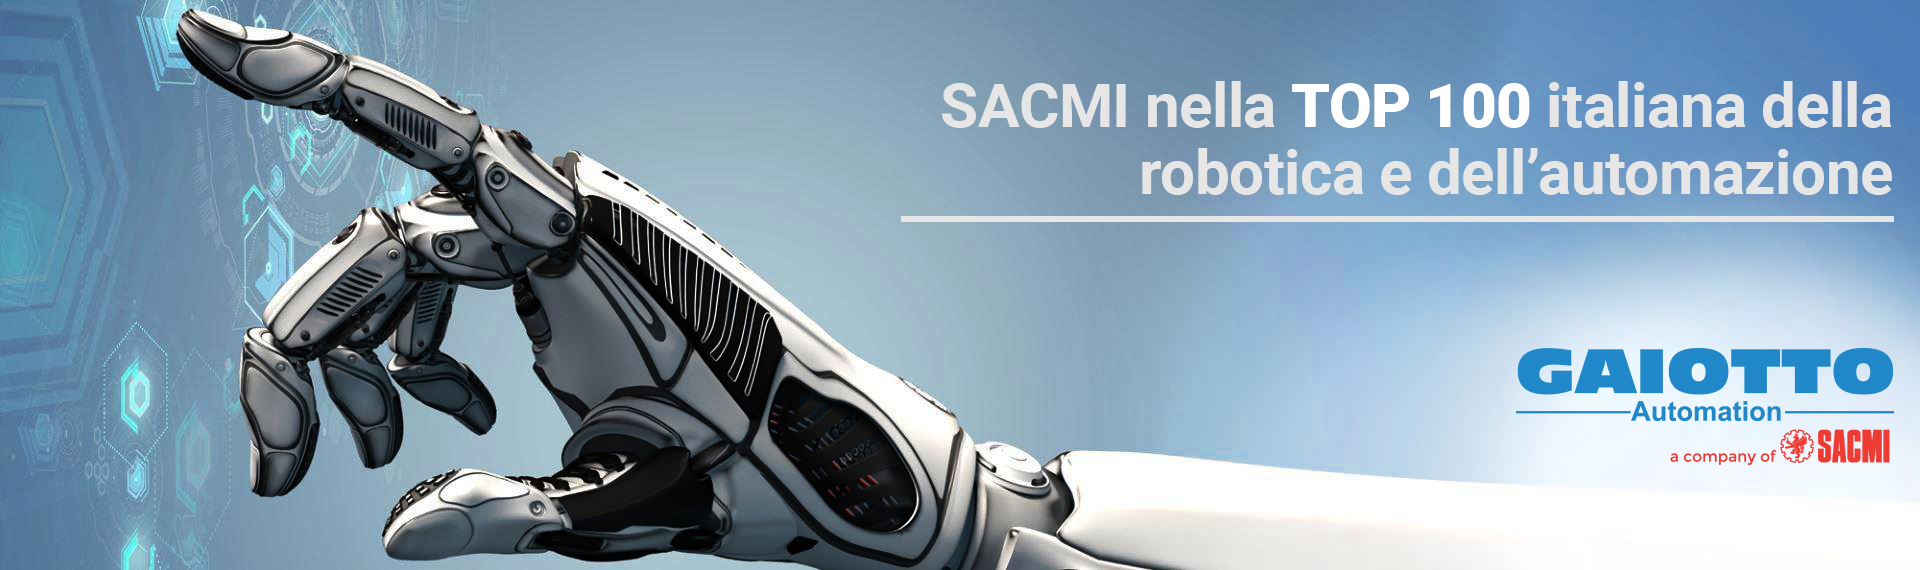 SACMI nella top 100 italiana della robotica e dell’automazione